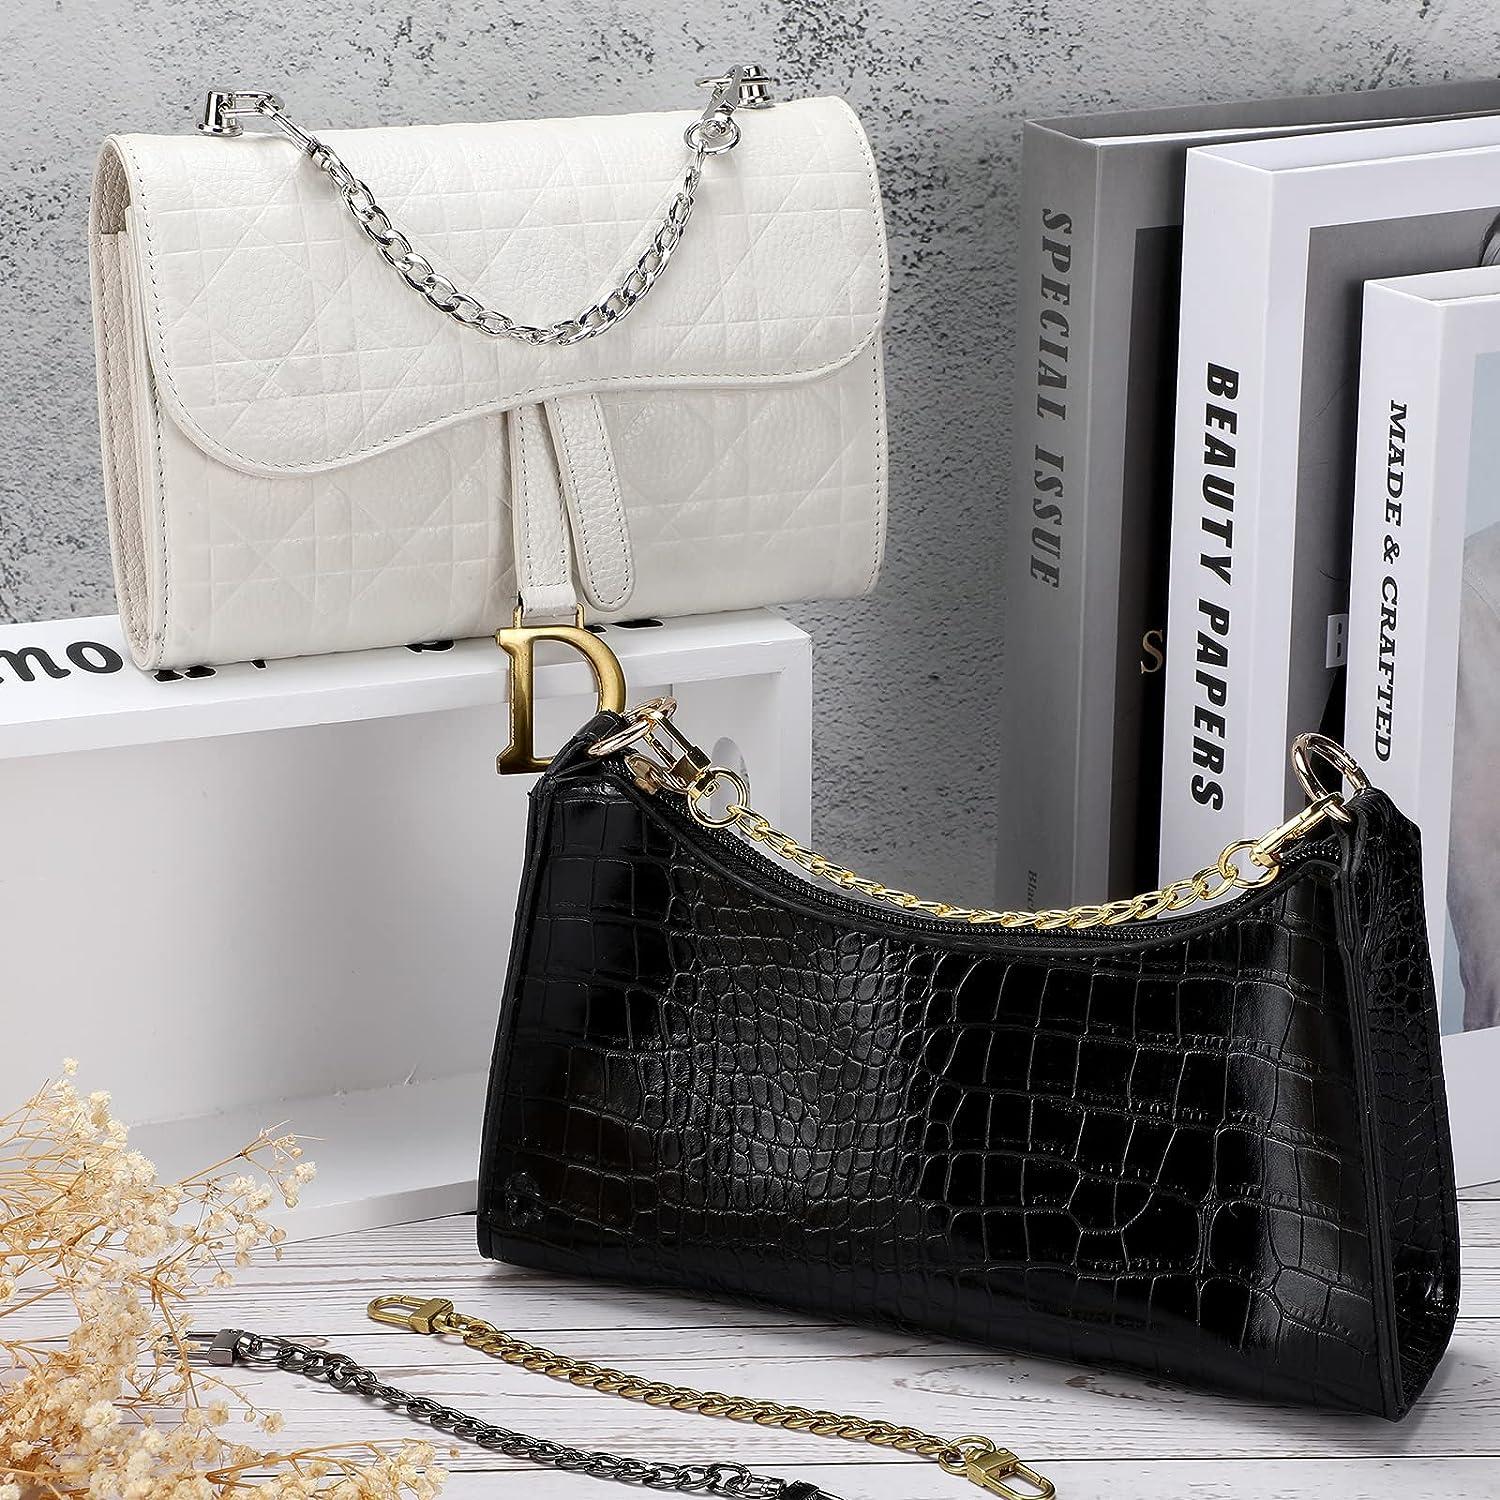 Chain Strap Handbags | Mercari